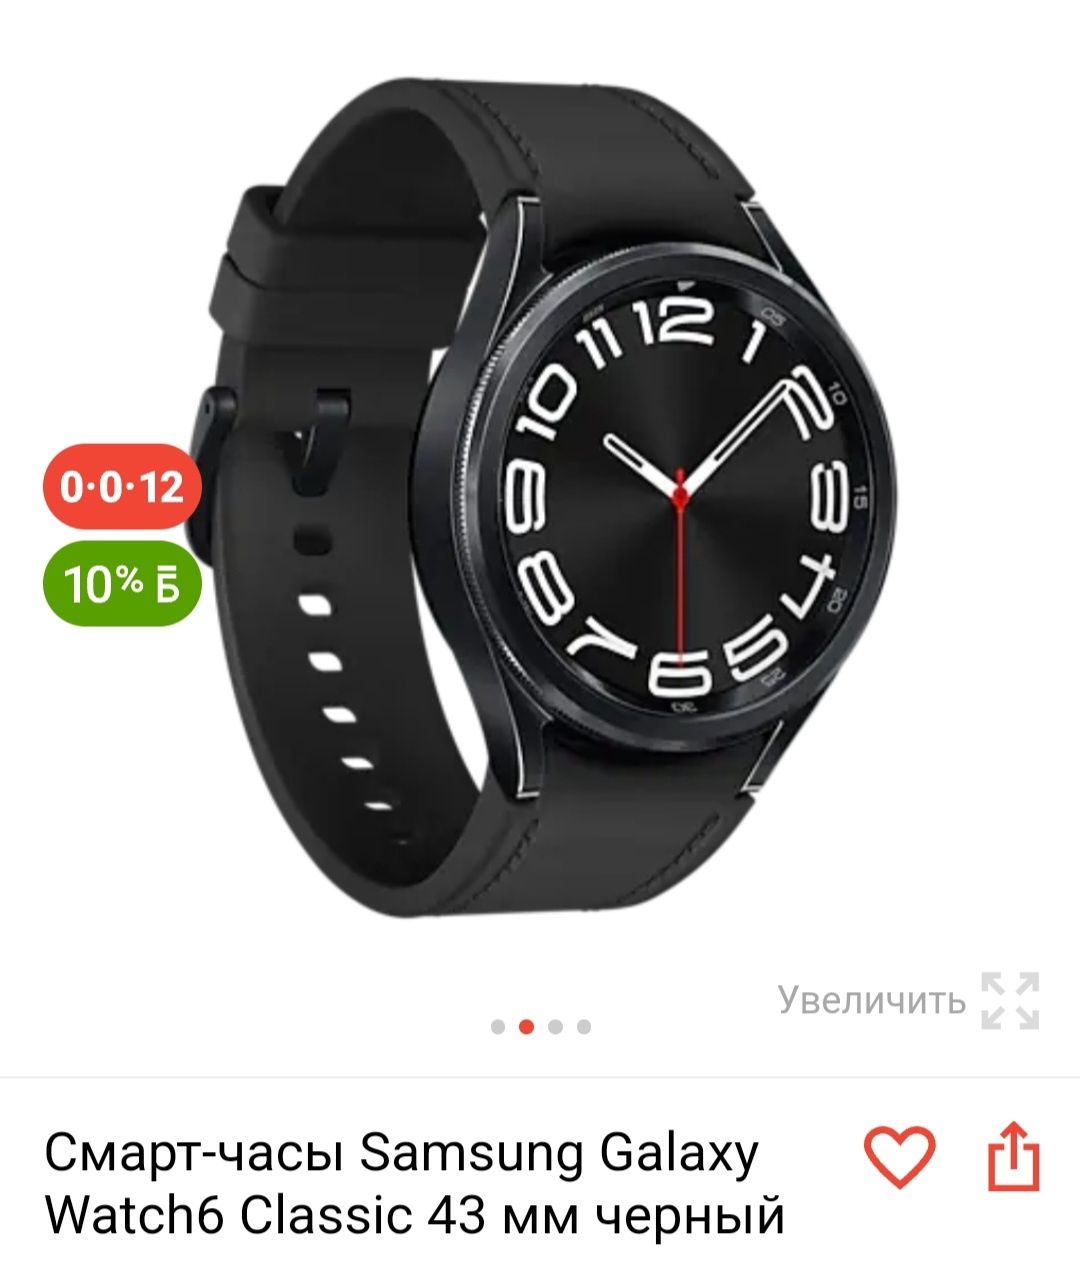 Продам часы Samsung watch 6